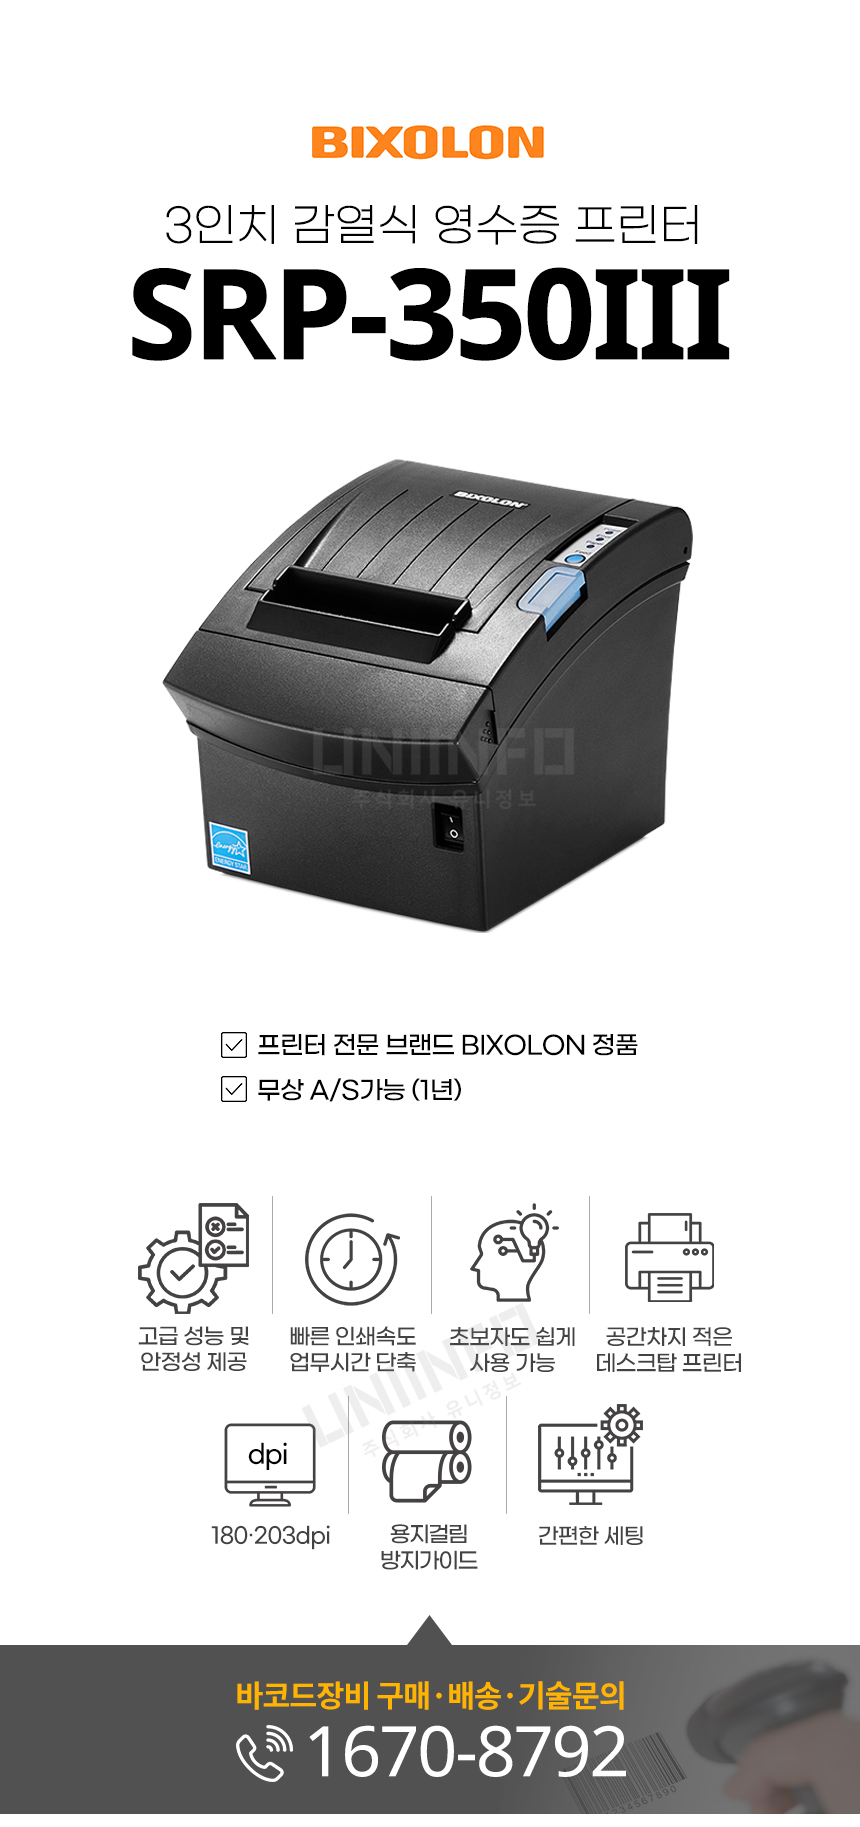 3인치 감열식 영수증 프린터 srp-350III 고급 성능 및 안정성 제공 빠른 인쇄속도 업무시간 단축 간편한 세팅